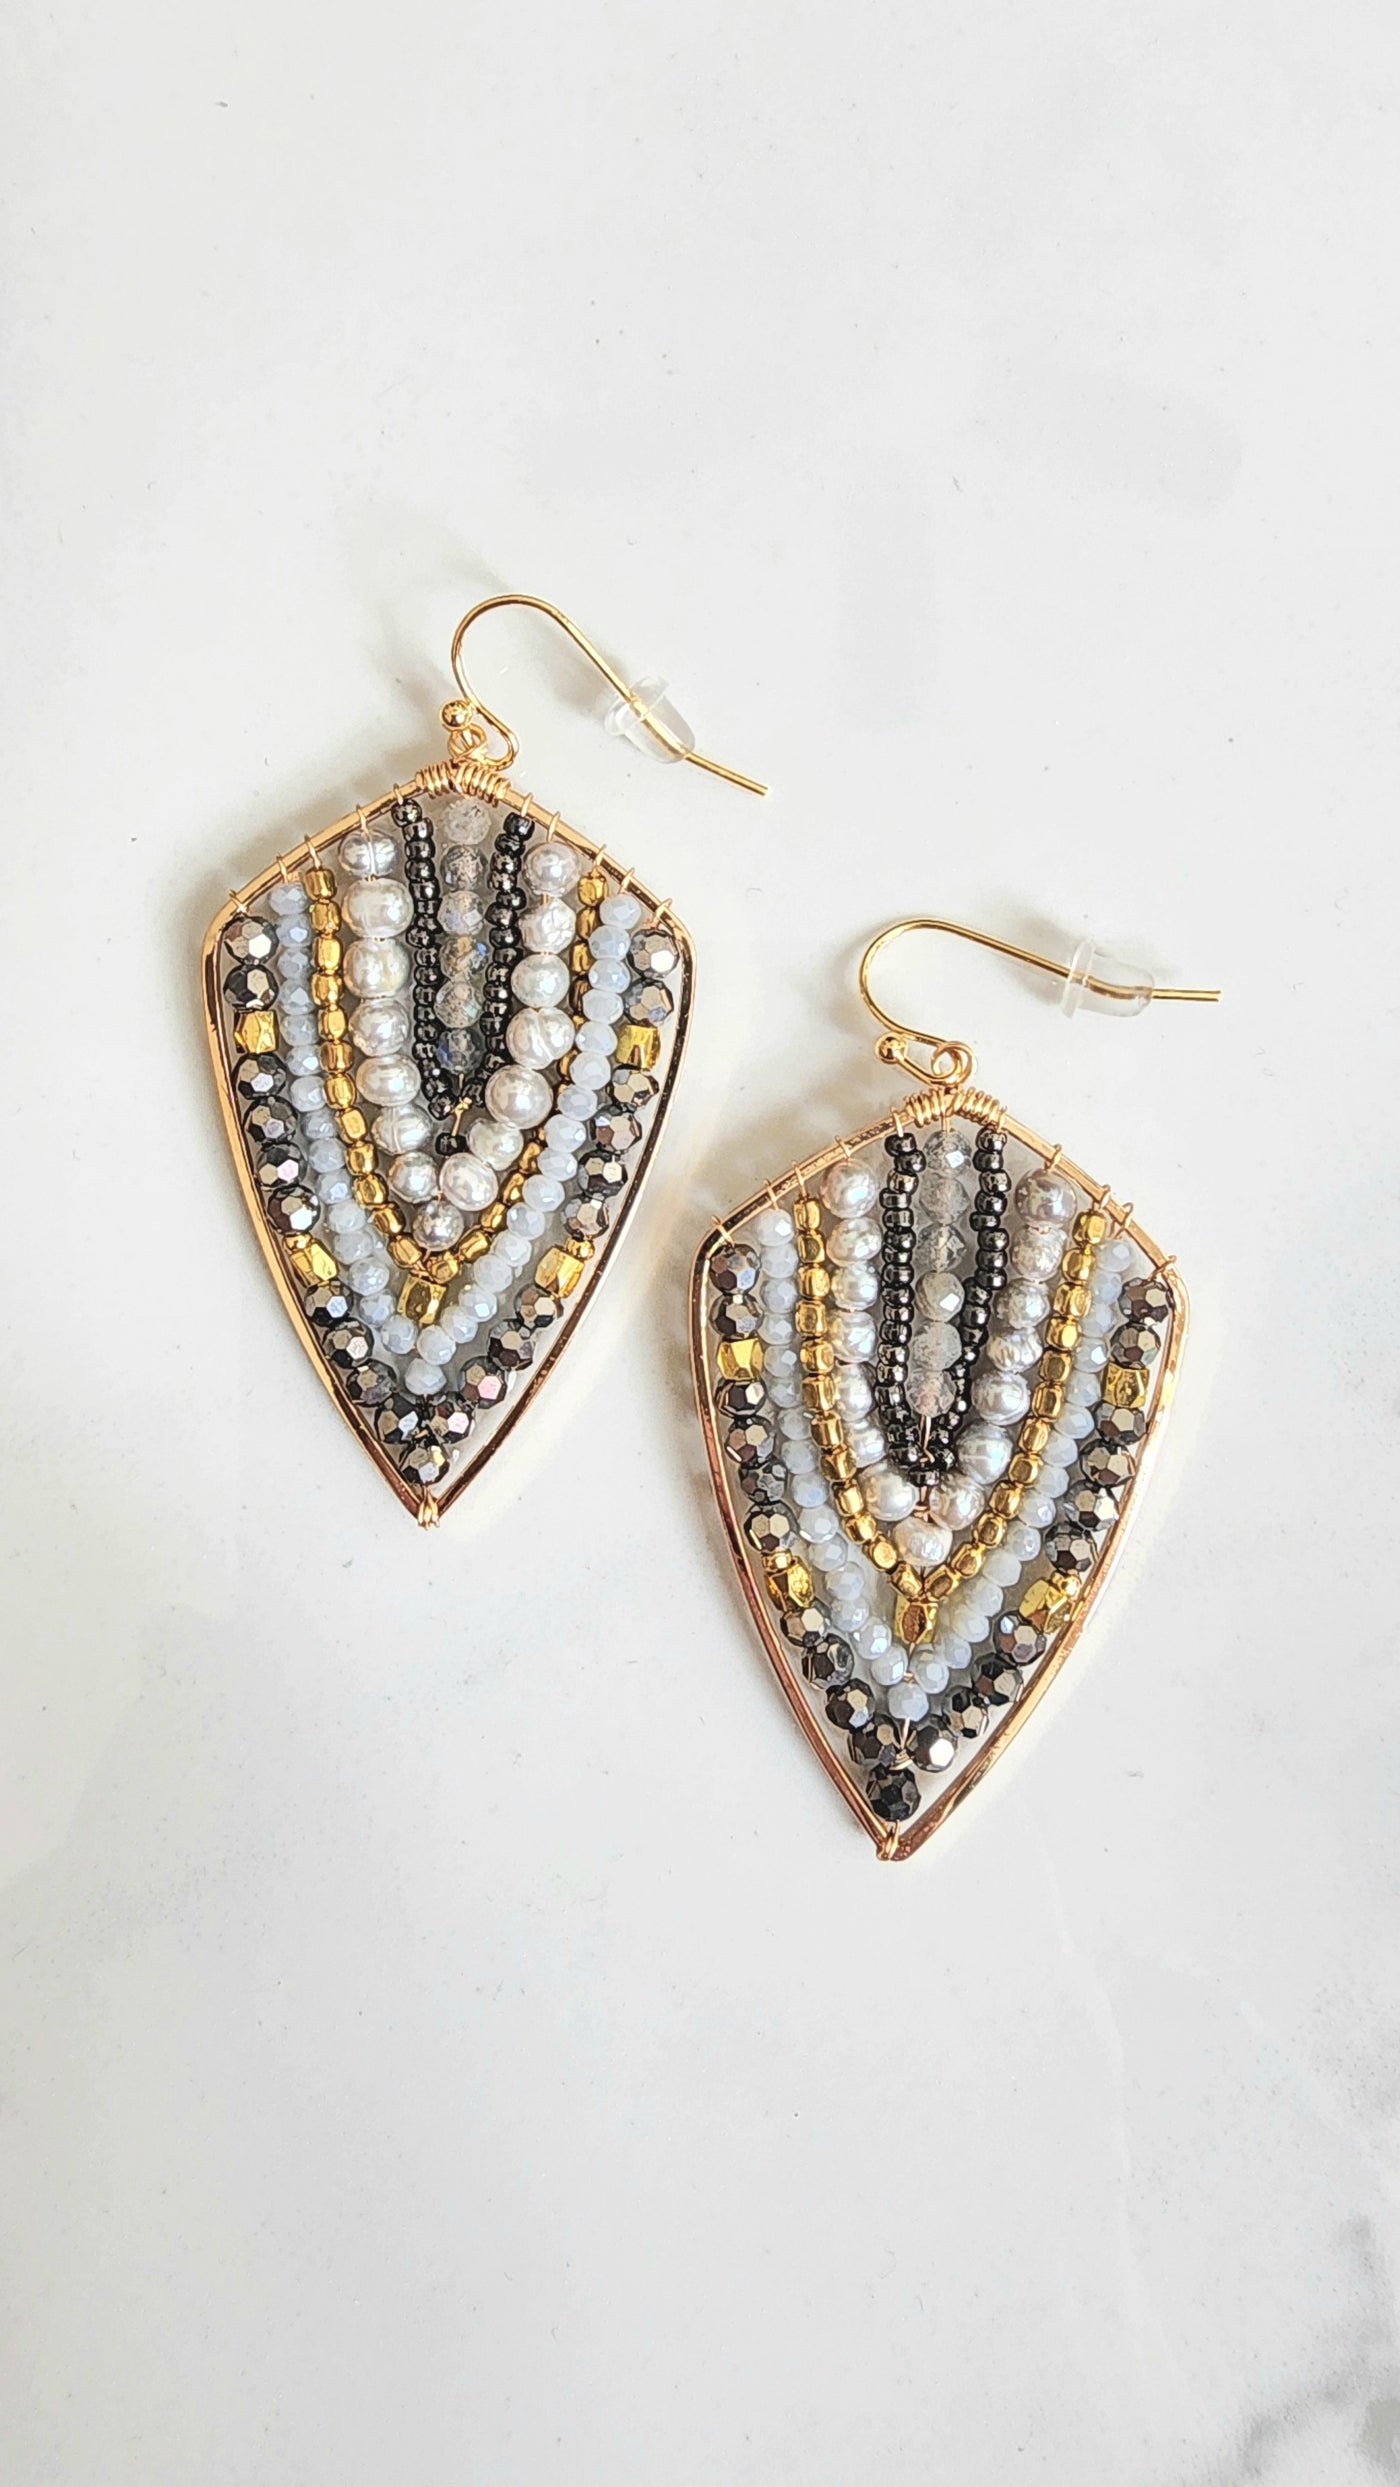 OLINA earrings in silver